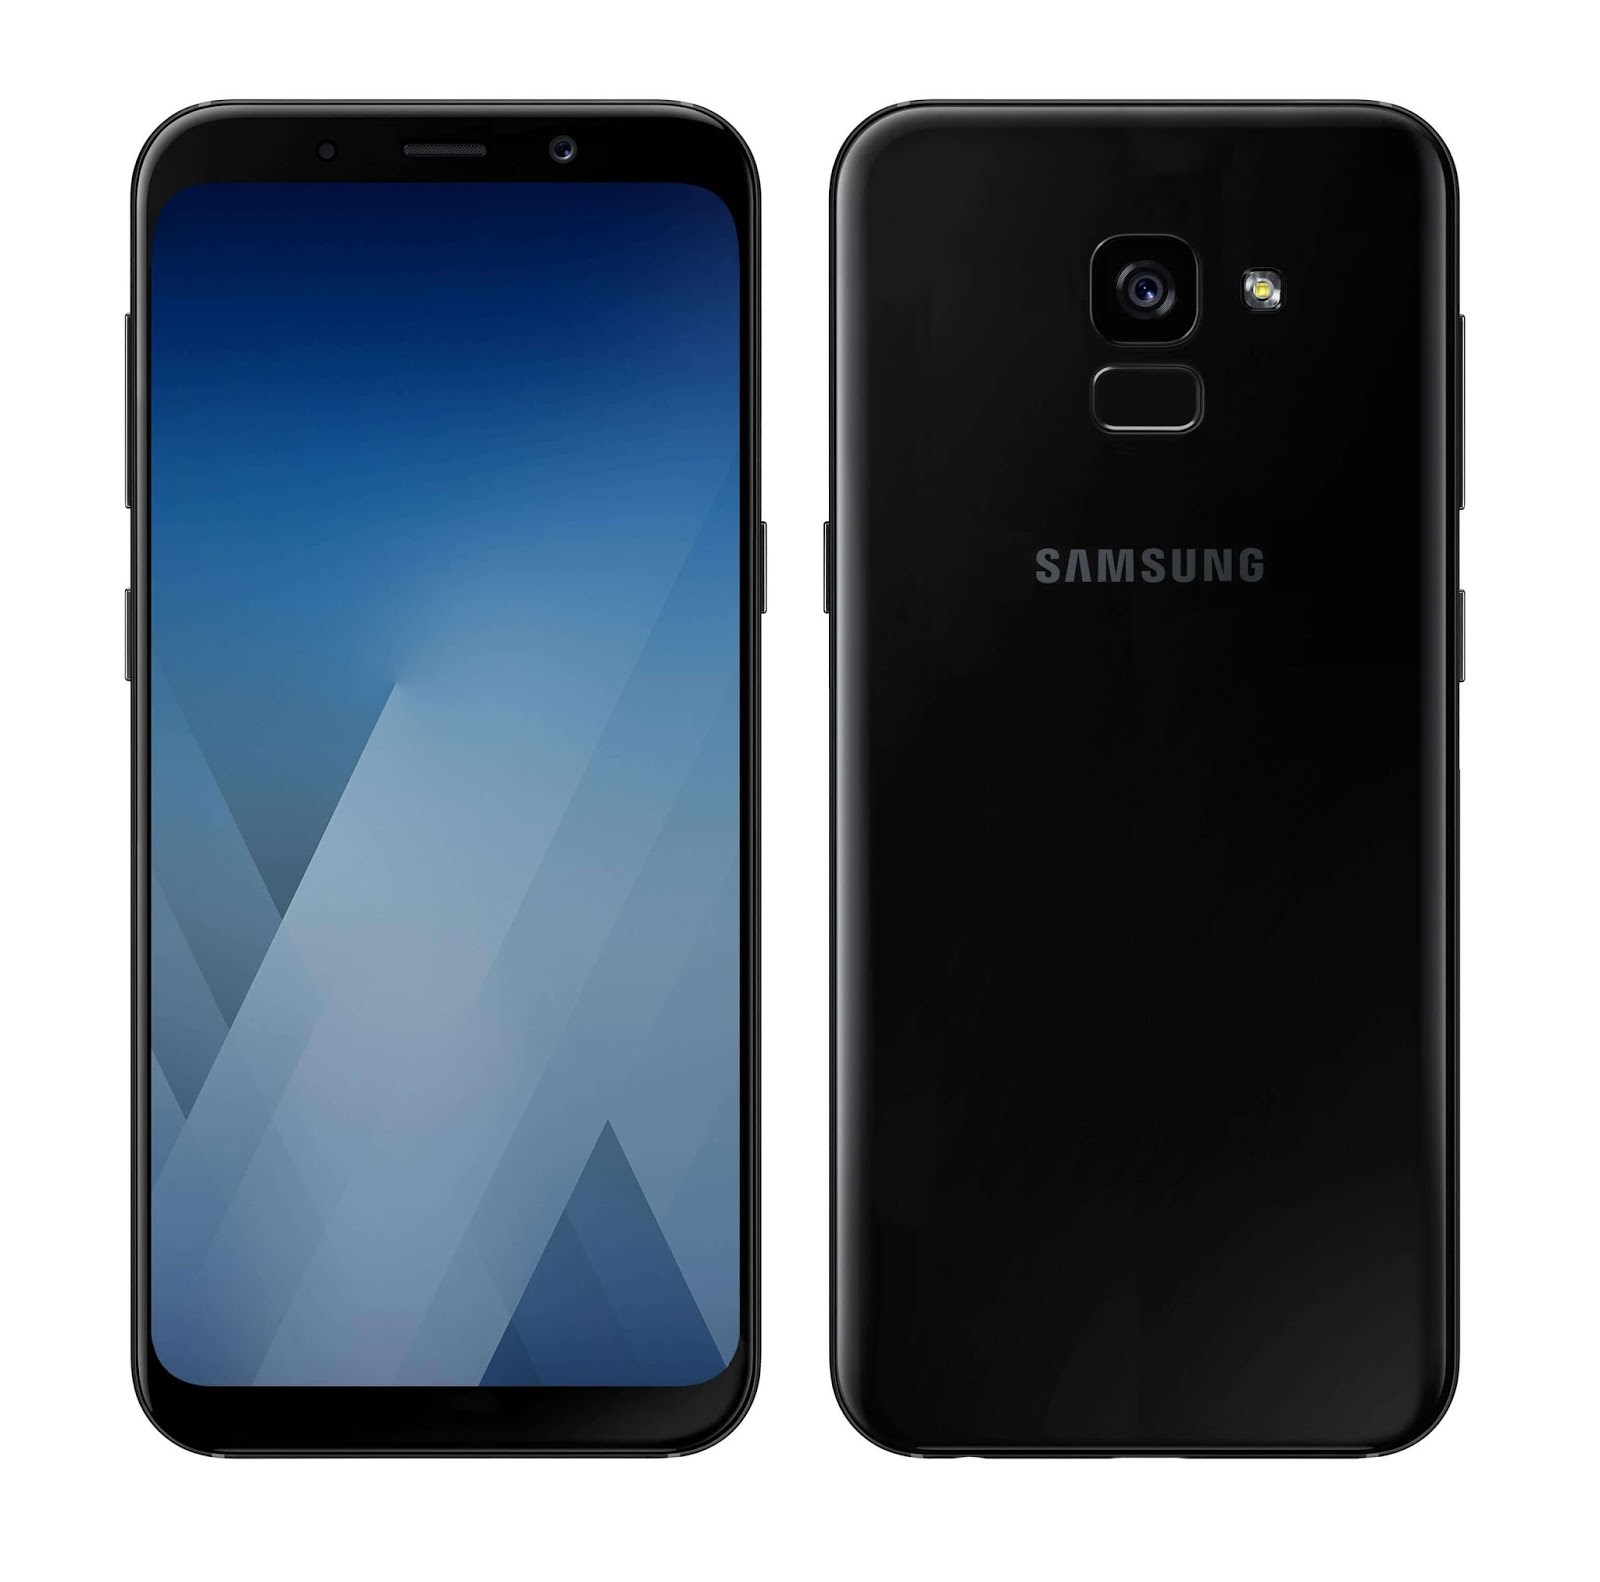 Samsung galaxy a01 купить. Samsung Galaxy a8 2018. Samsung Galaxy a5 2018. Samsung Galaxy a8 2018 Black. Samsung Galaxy a8 2018 32gb.